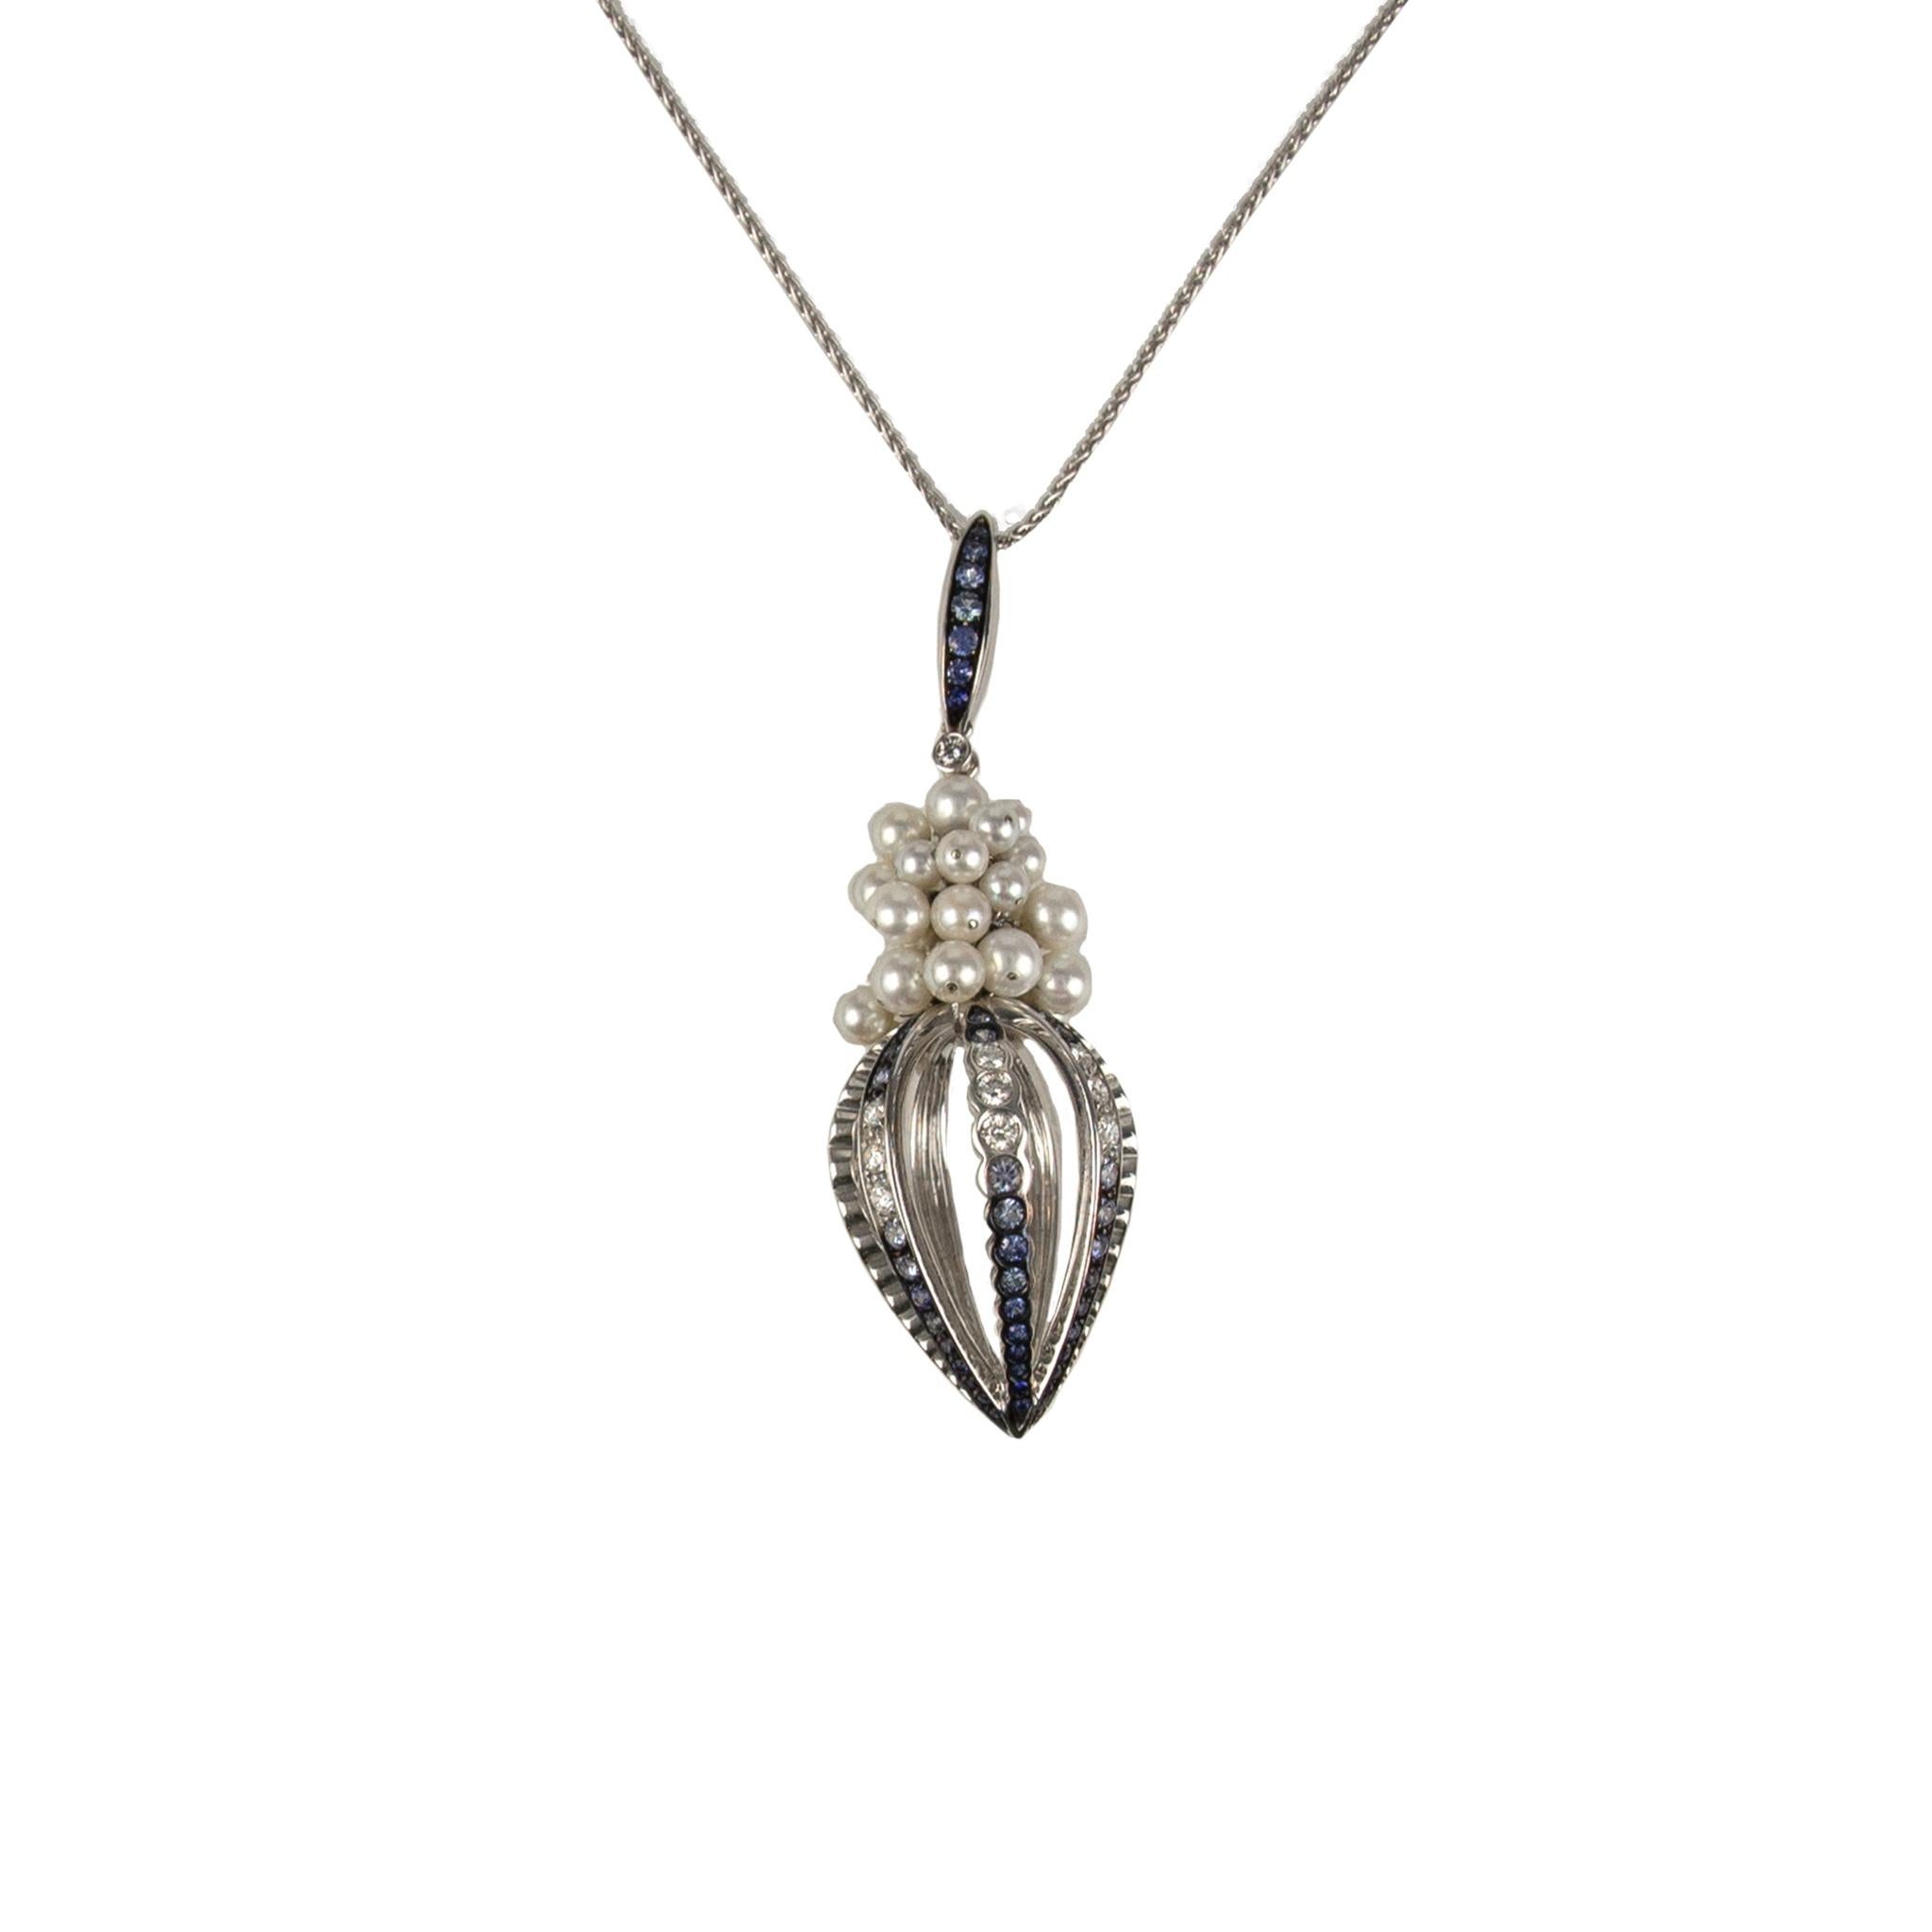 IO SI 18K White Gold Necklace
Diamond: 0.98ctw
Sapphire: 2.14ctw
SKU: BLU01860
Retail price: $18,480.00